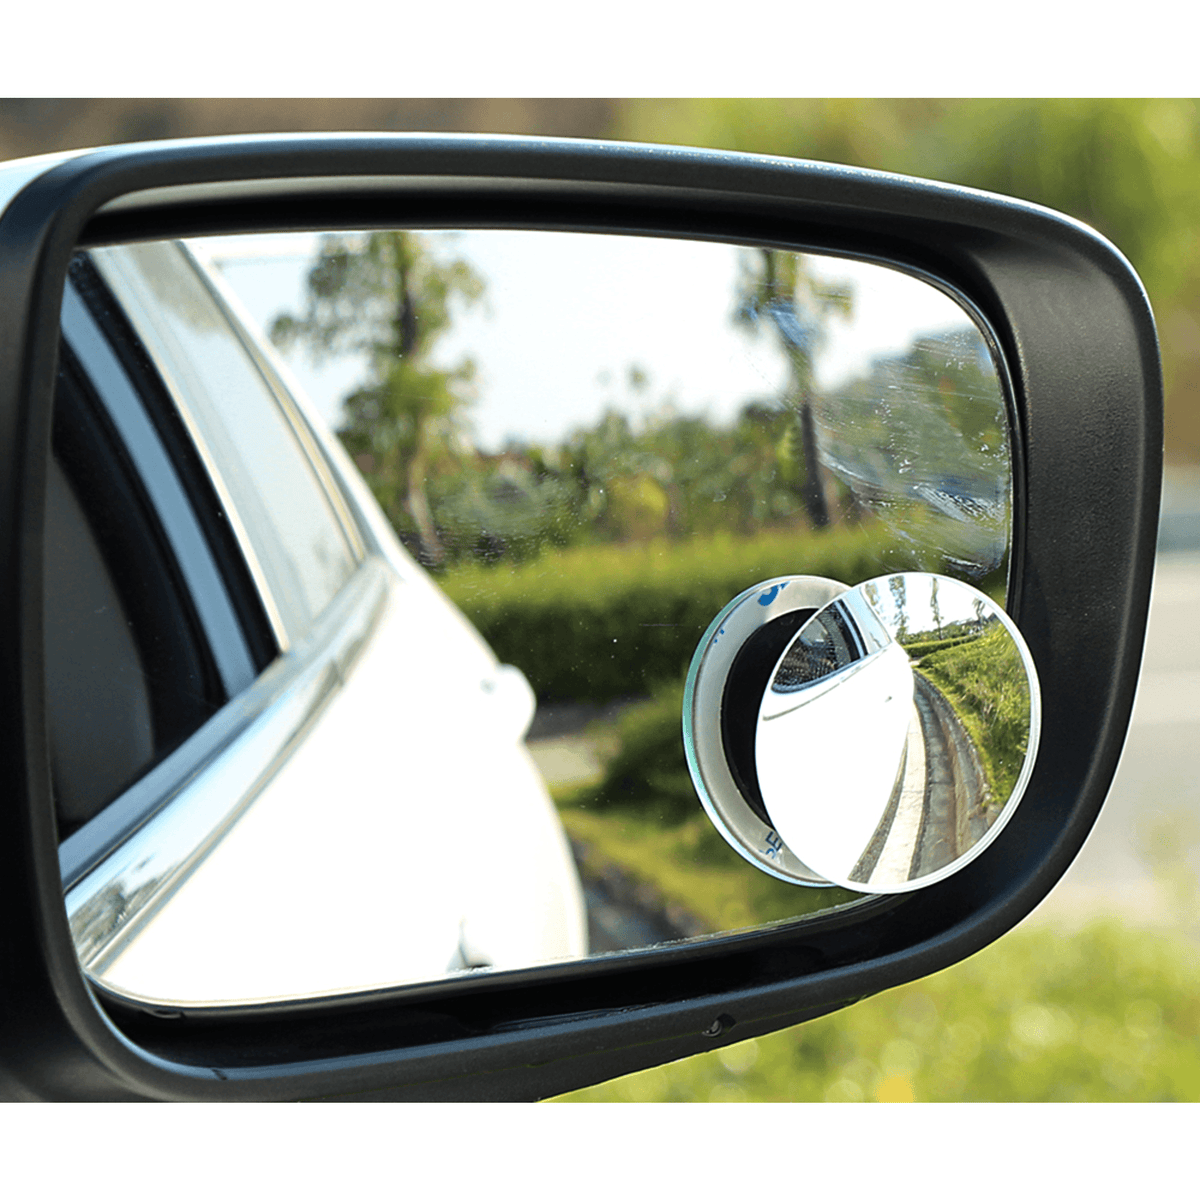 2Stk Toter Winkel Spiegel 360 Weitwinkel Randlos Blindspiegel Zusatzspiegel  Auto